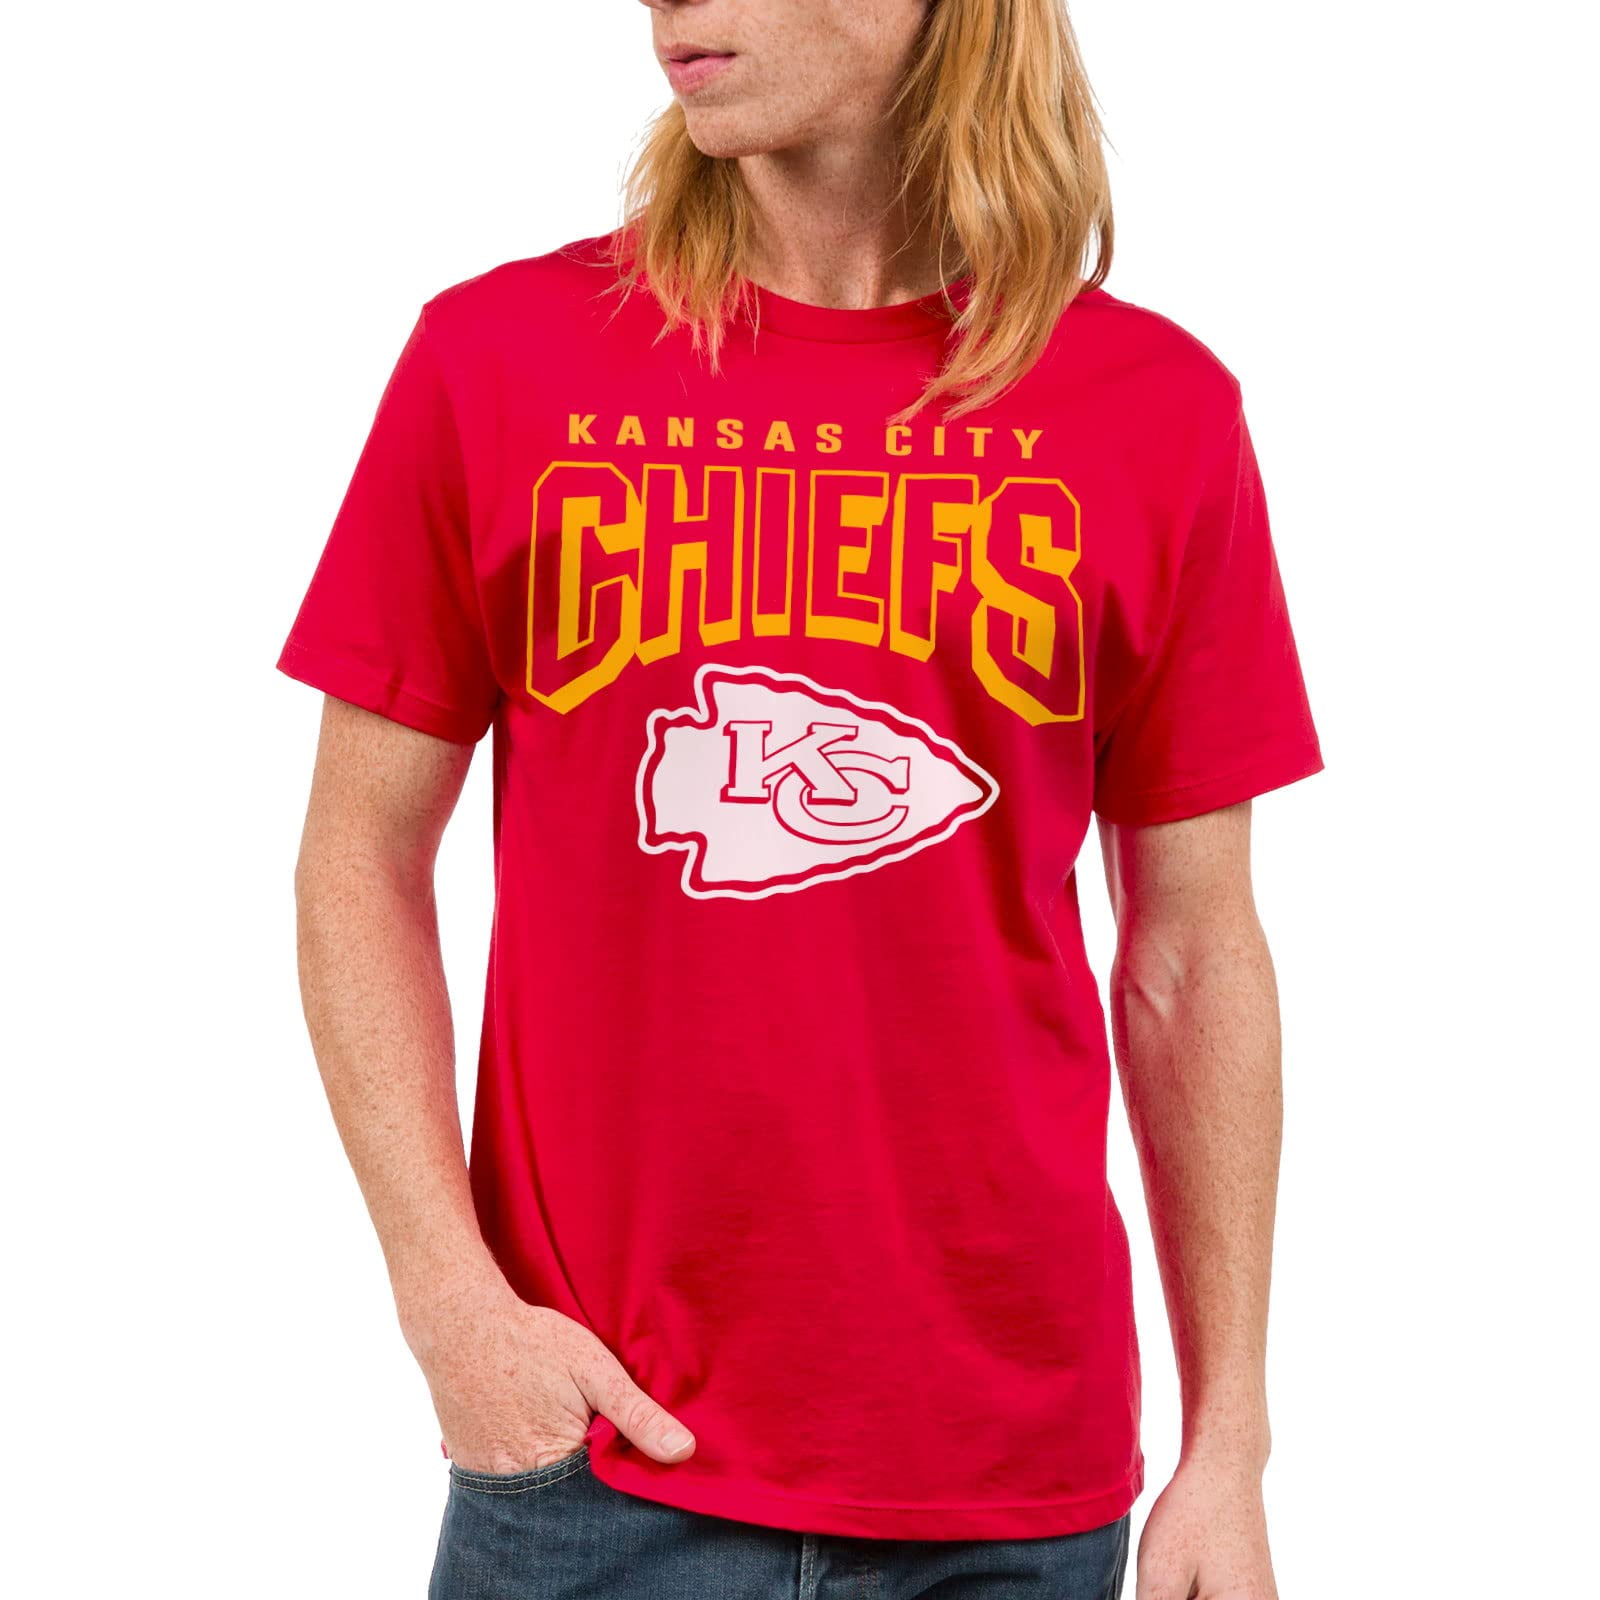 Oversized Nfl Kansas City Chiefs T-shirt